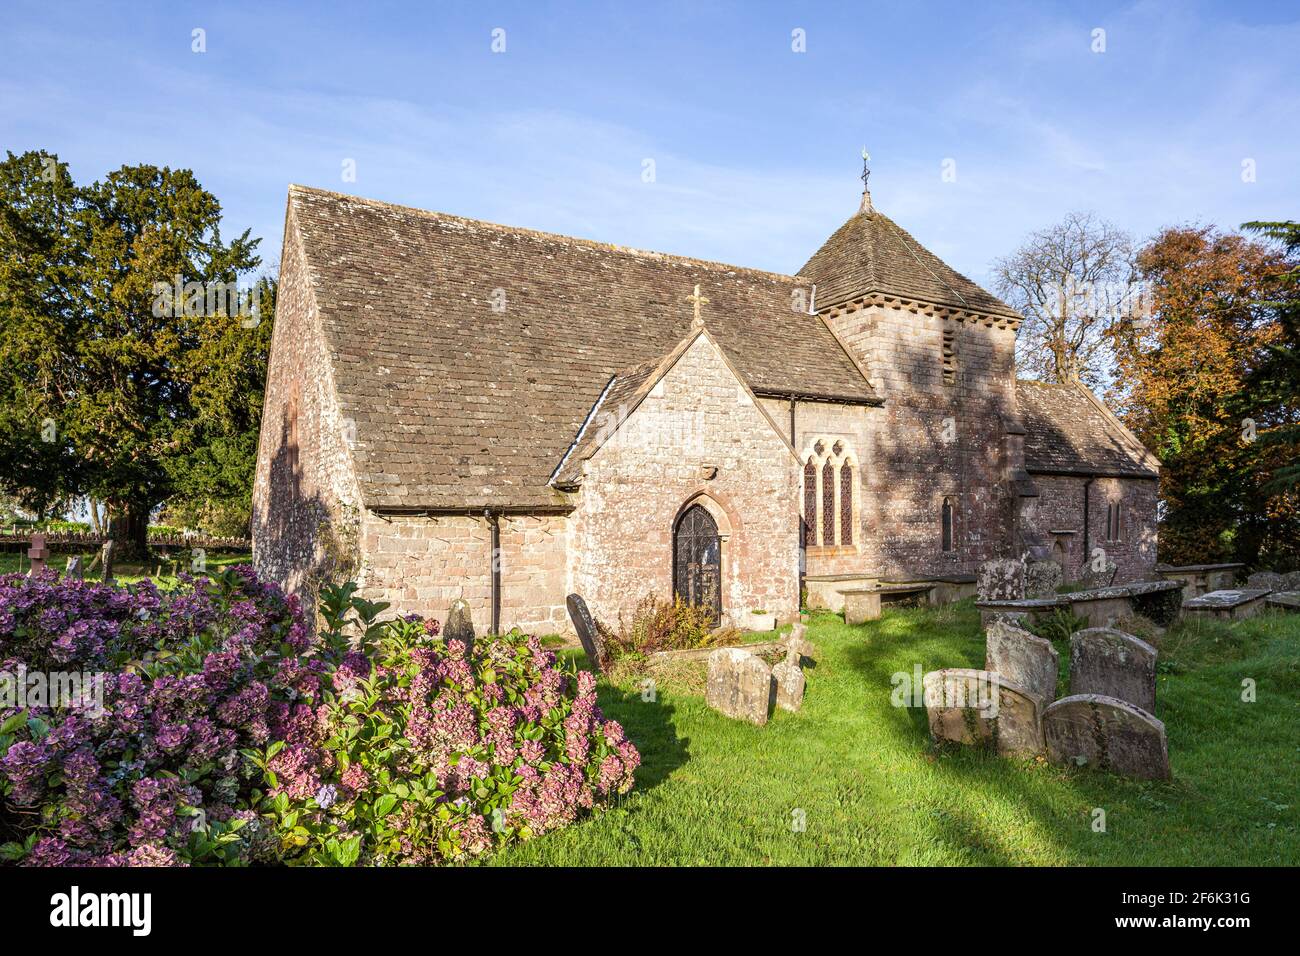 L'église St Mary Magdalene, située dans un cimetière circulaire, à Hebelsfield, dans la forêt de Dean, Gloucestershire, Royaume-Uni Banque D'Images